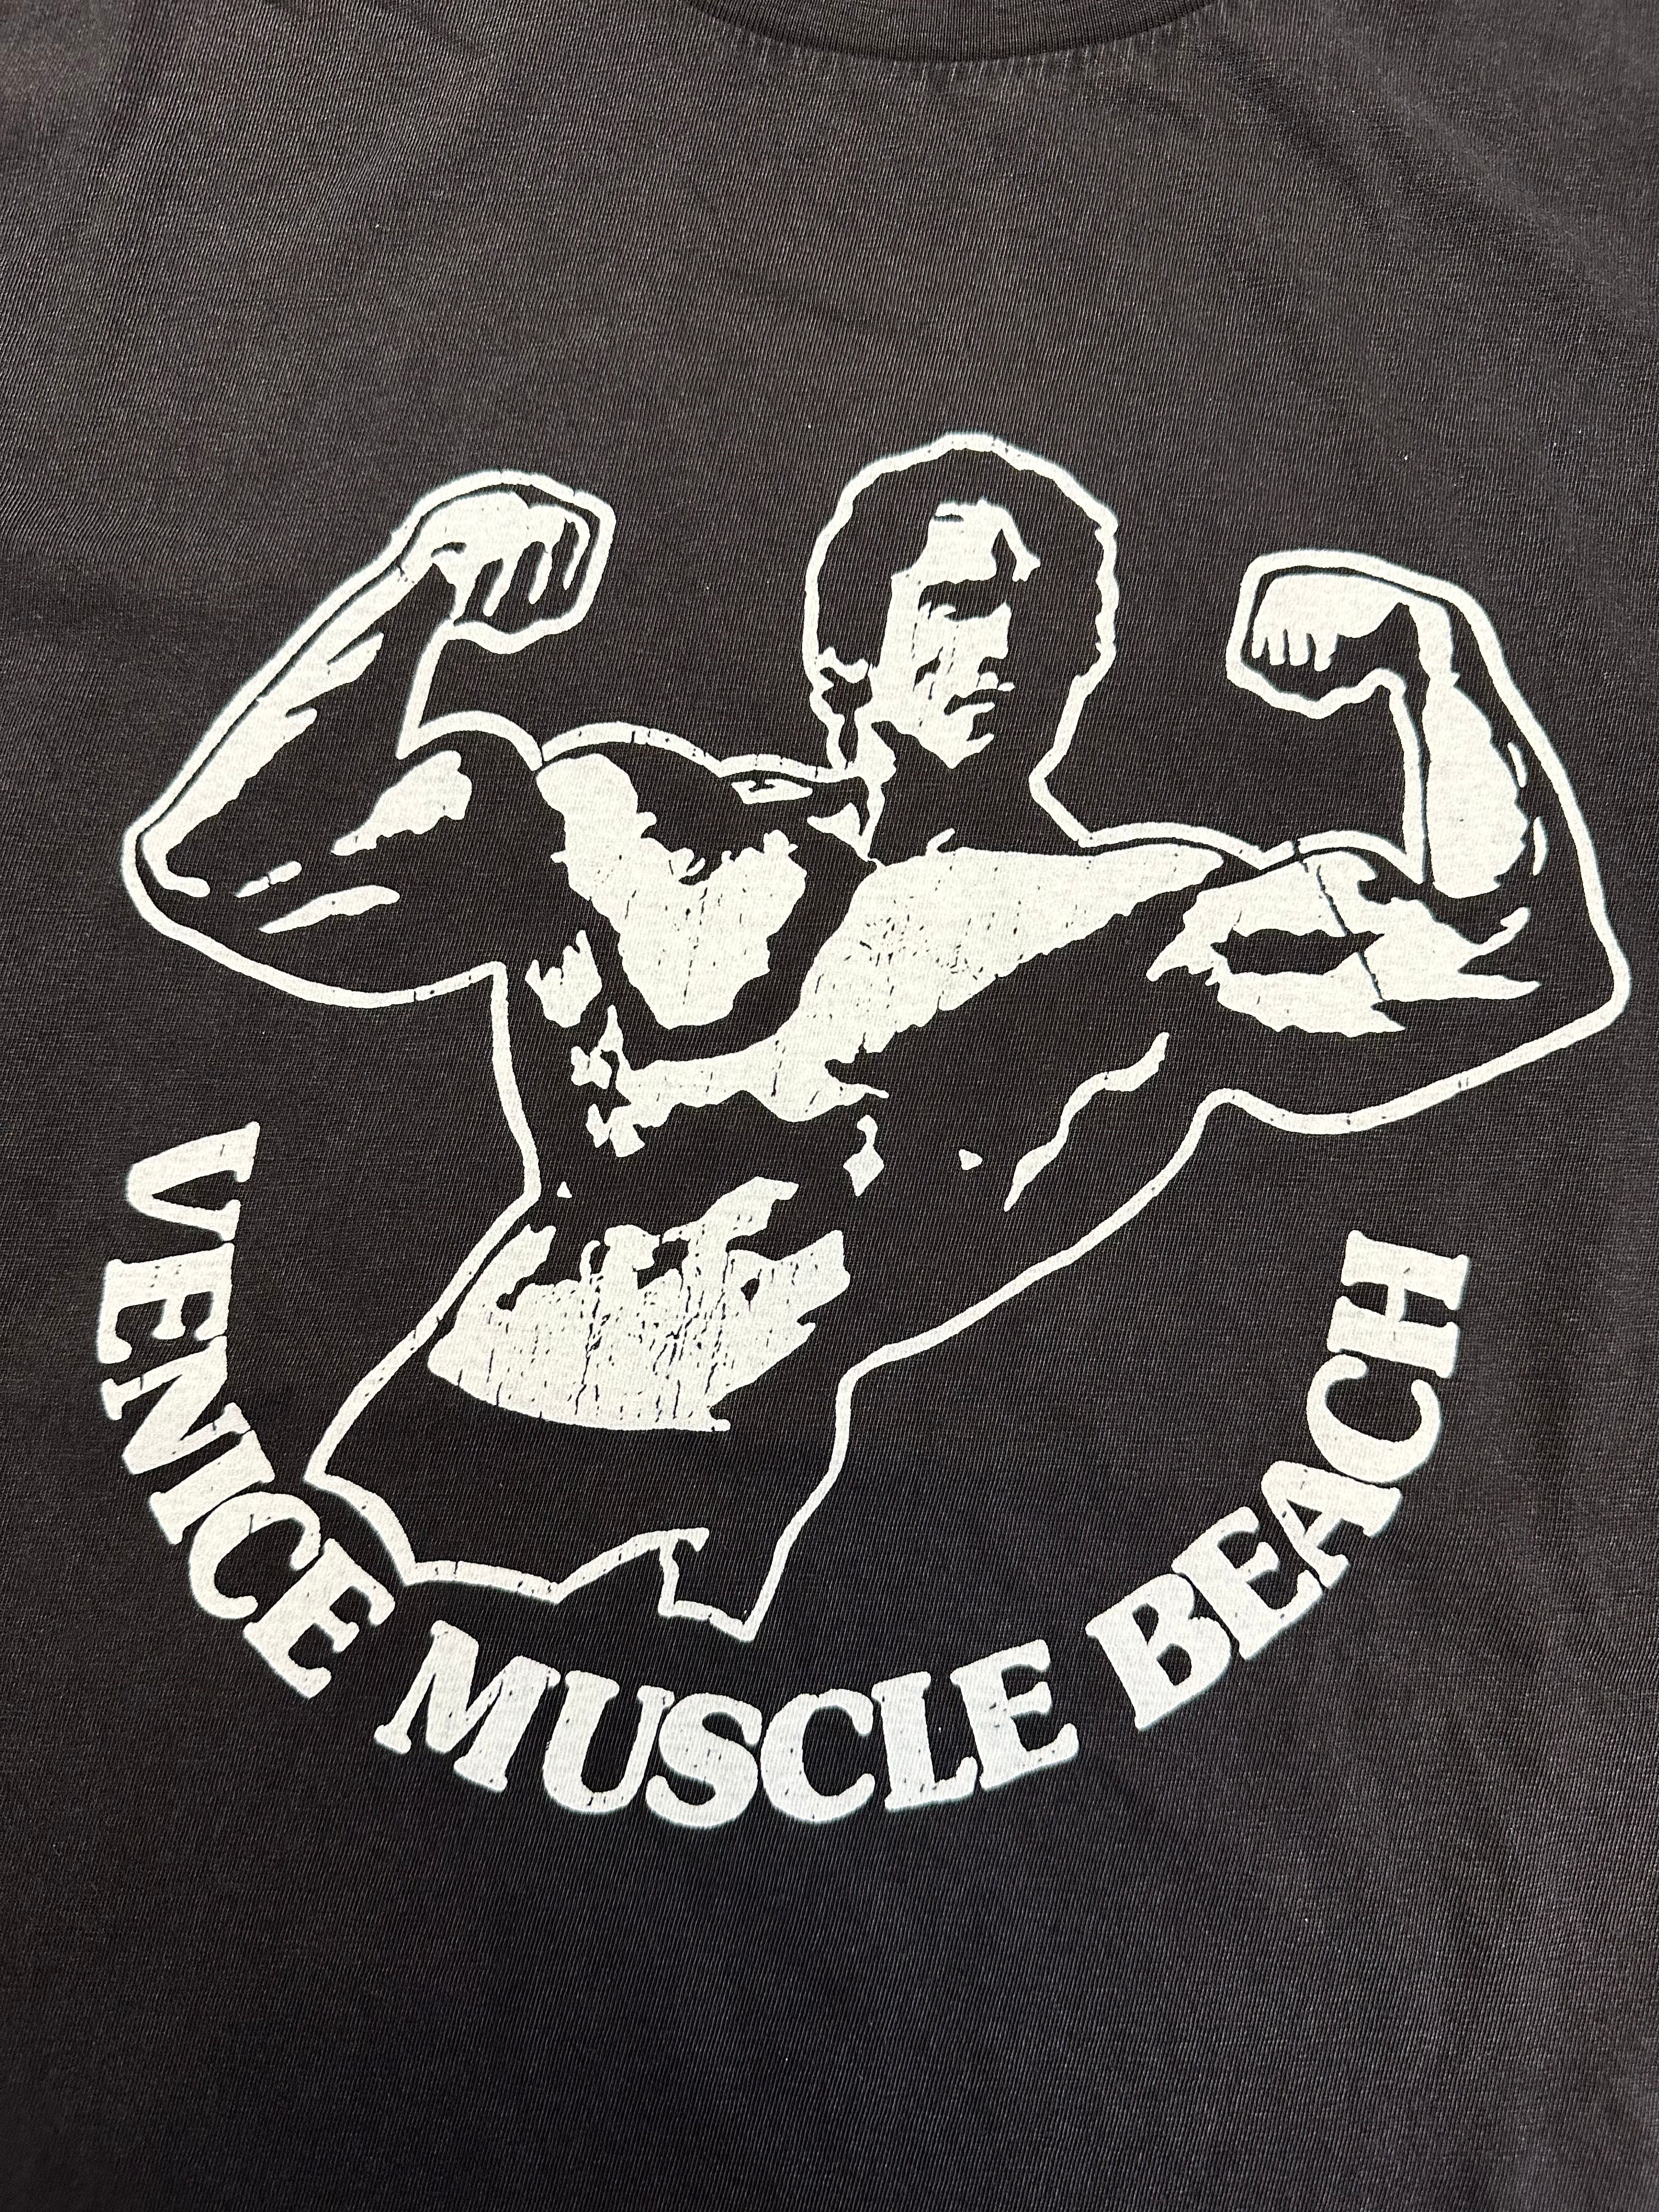 T-shirt "Venice Muscle Beach" Mr Hot Dog